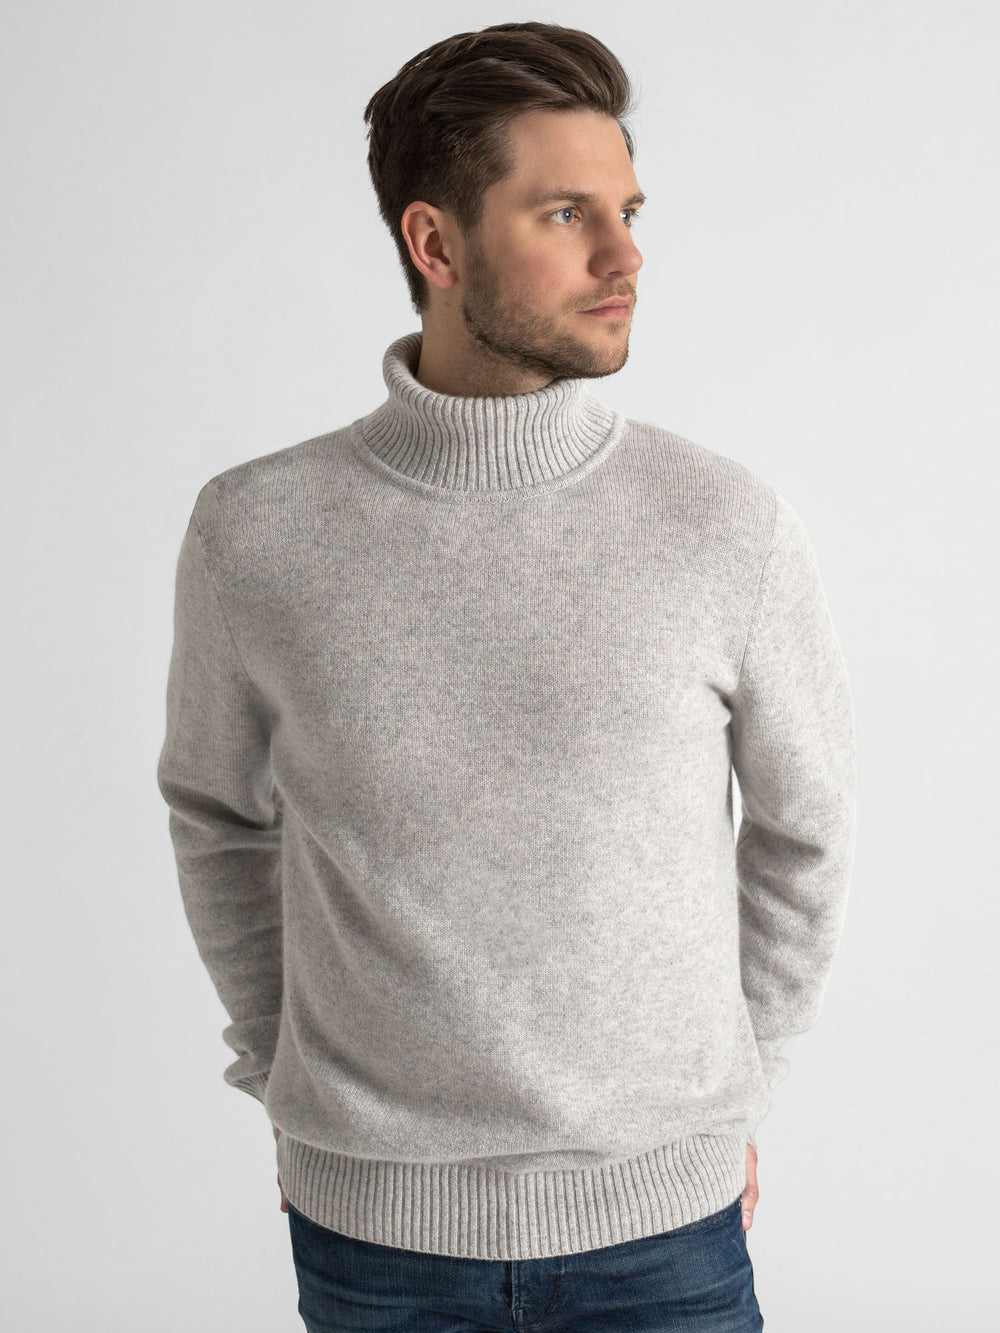 Turtle neck cashmere sweater. 100% cashmere. Scandinavian design. Color: Light grey